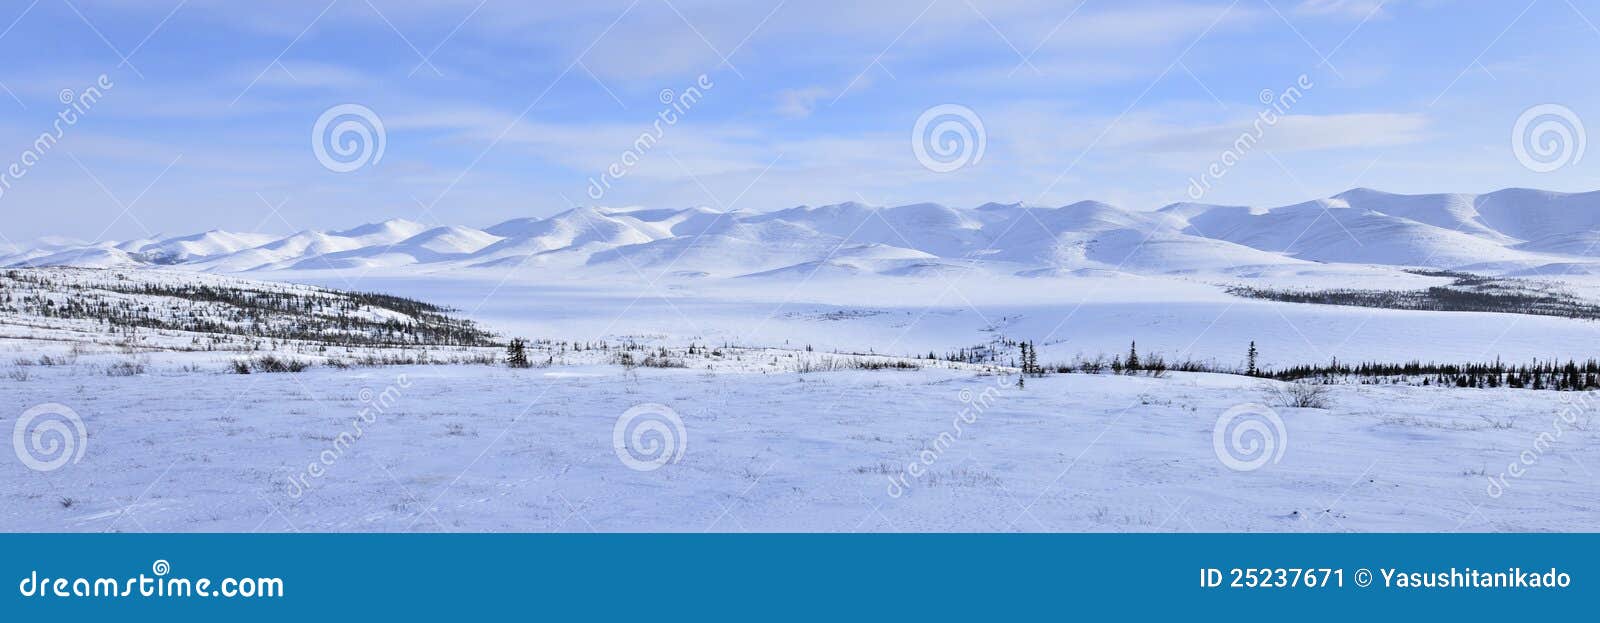 panorama arctic landscape